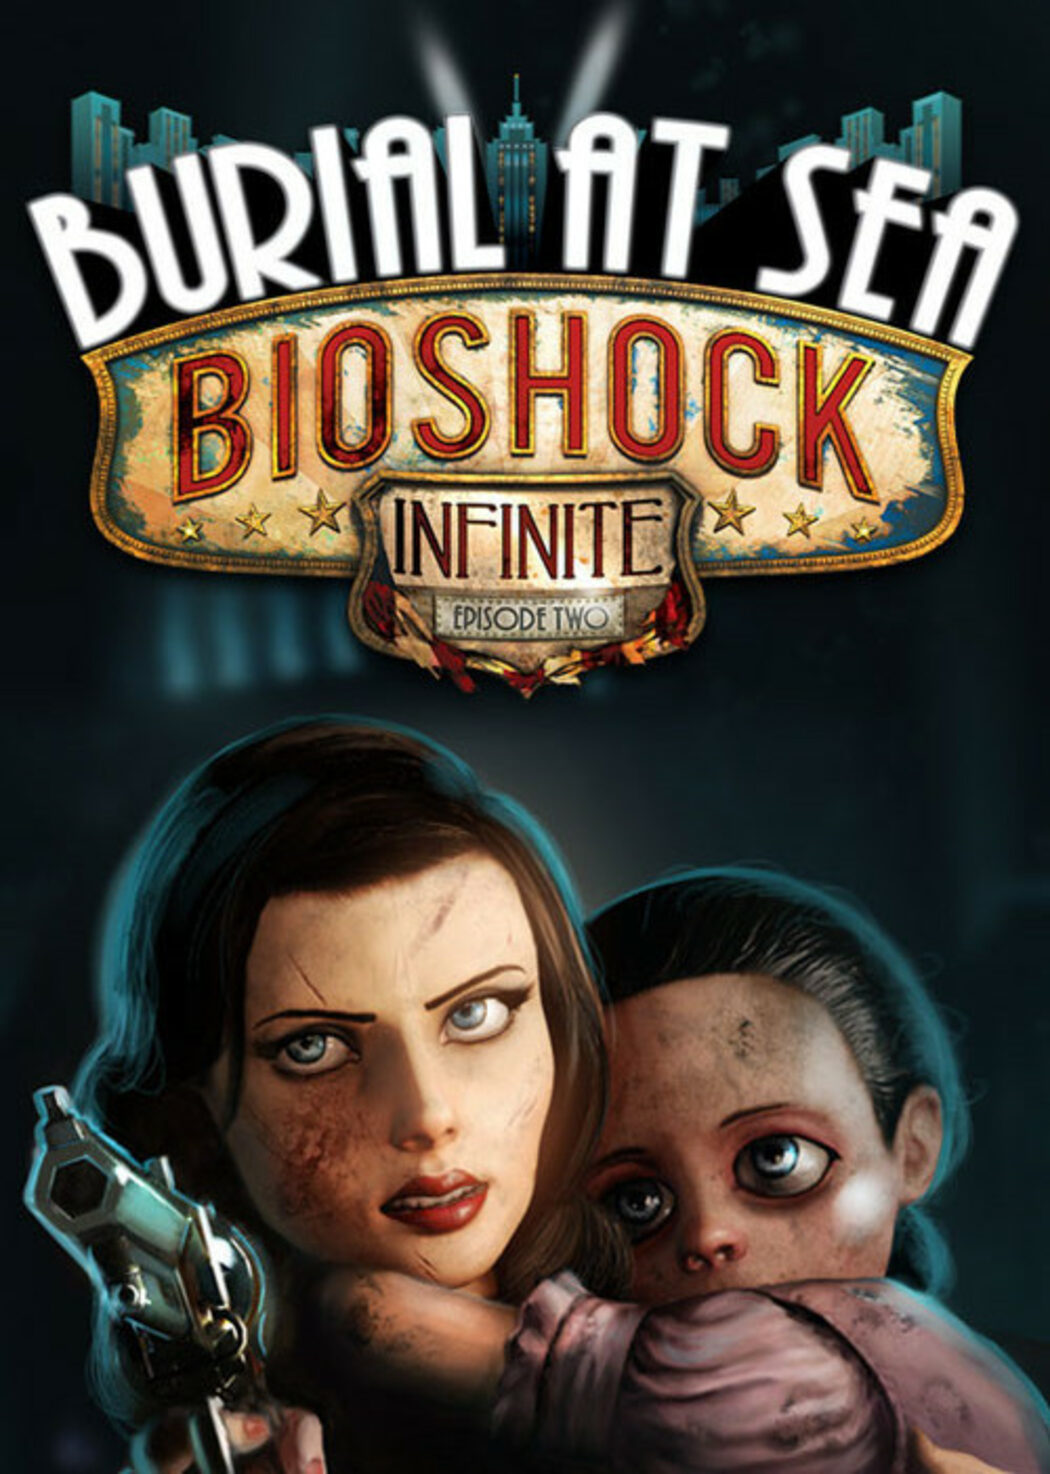 Bioshock Infinite DLC Burial at Sea Episode 2 - Part 3/3